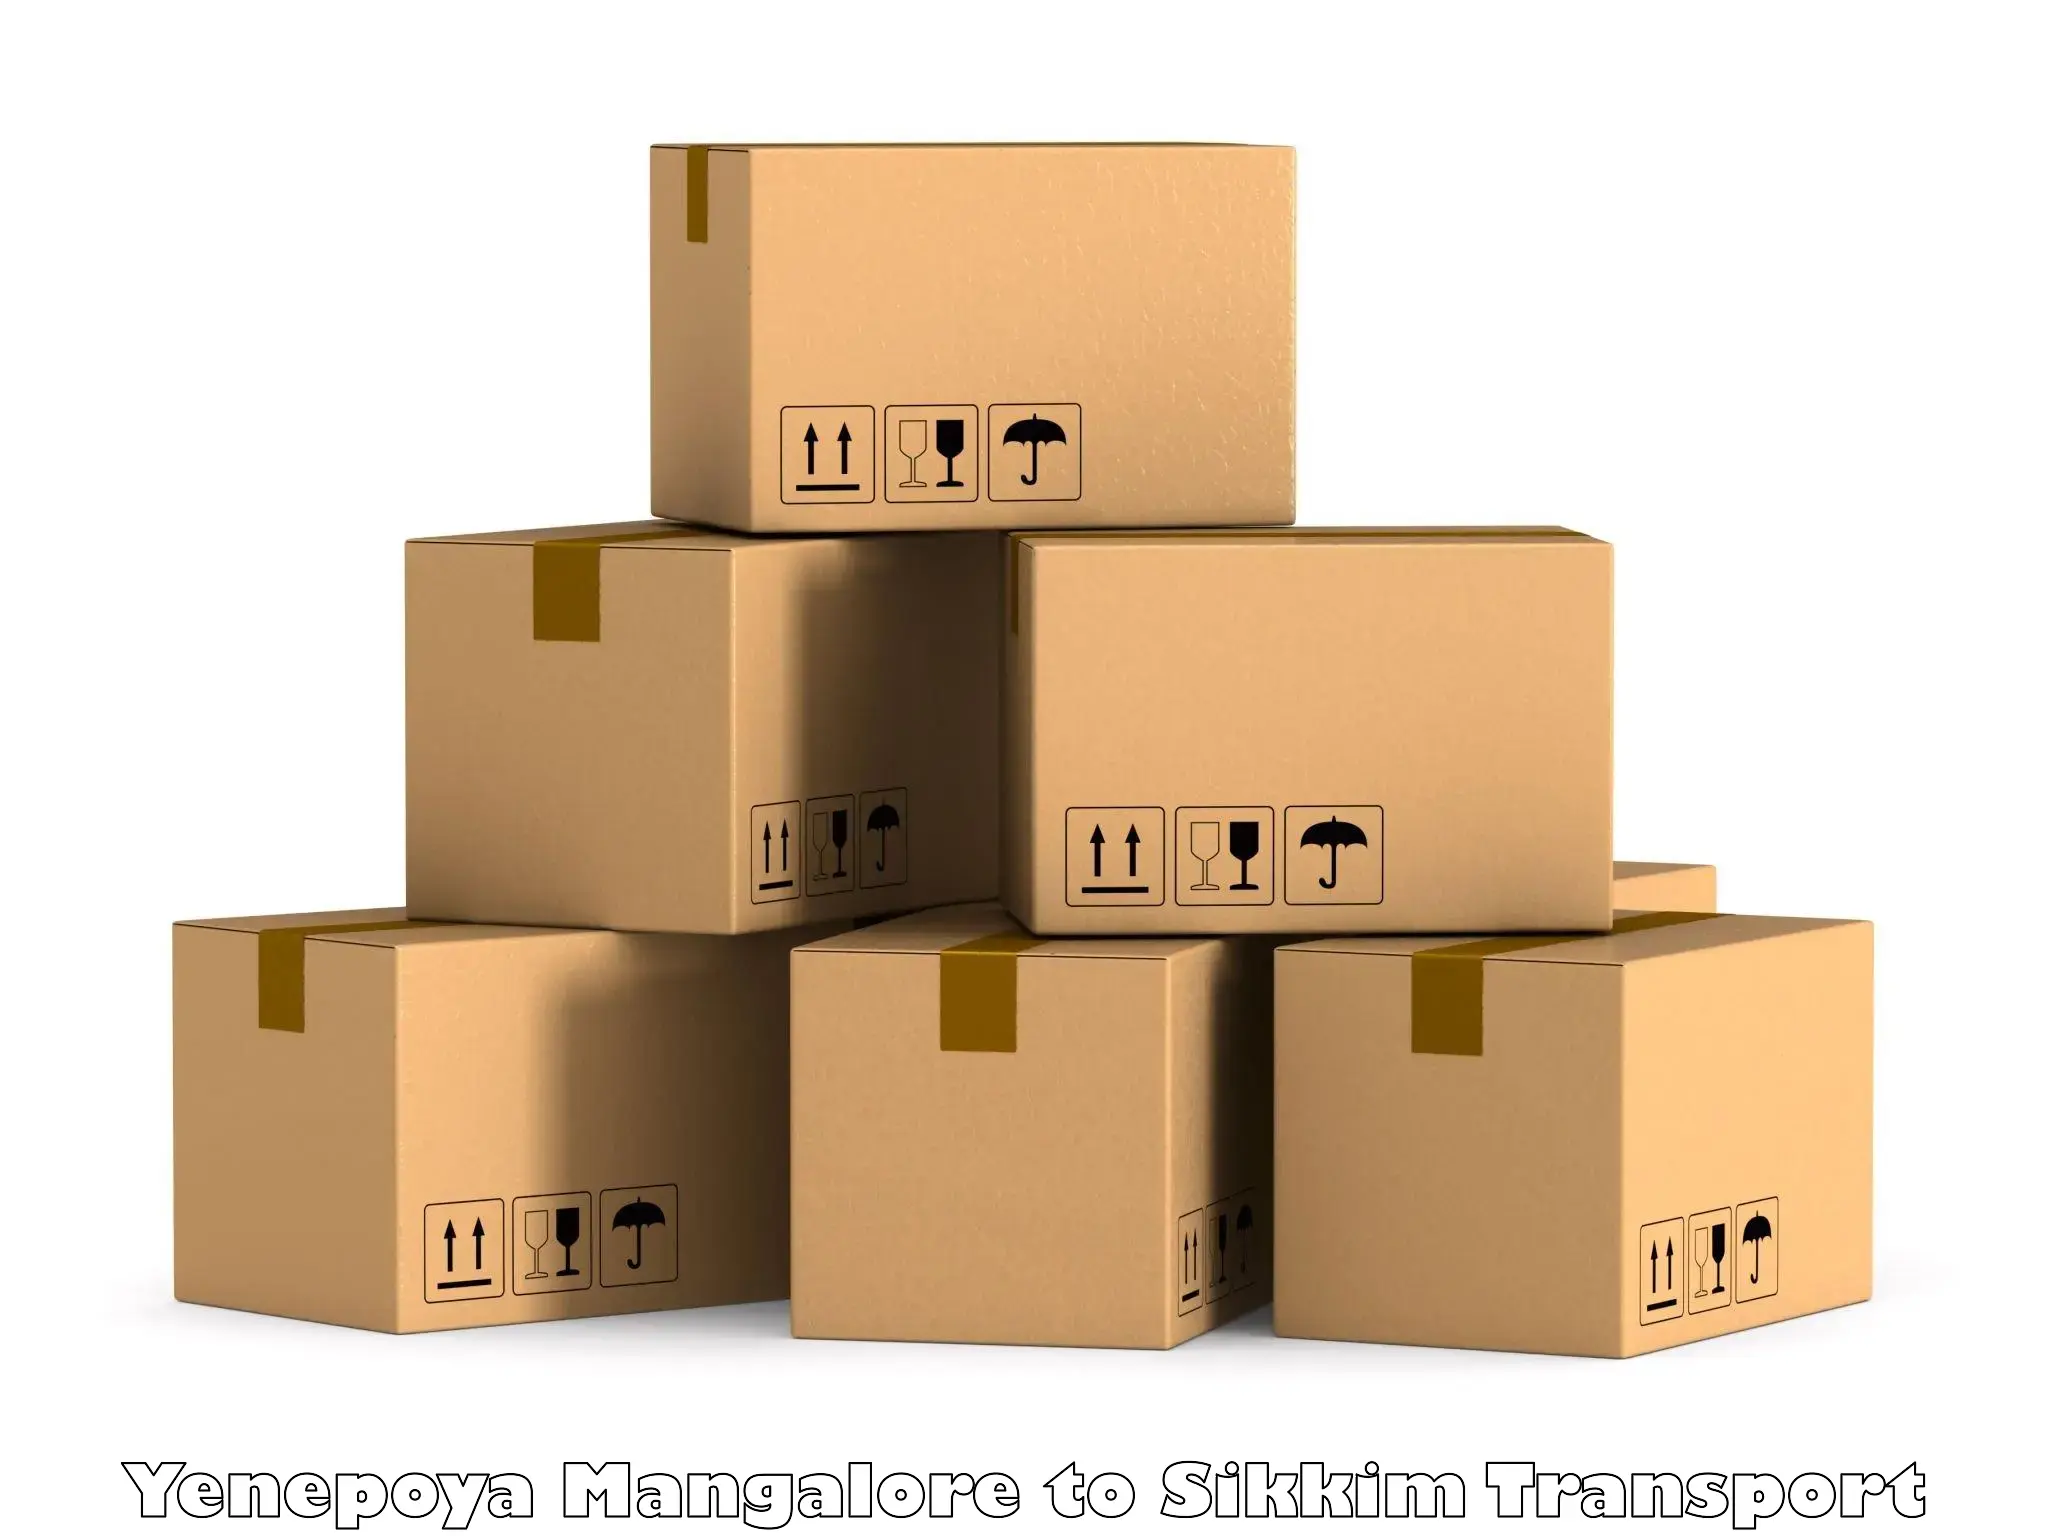 Goods delivery service Yenepoya Mangalore to Mangan